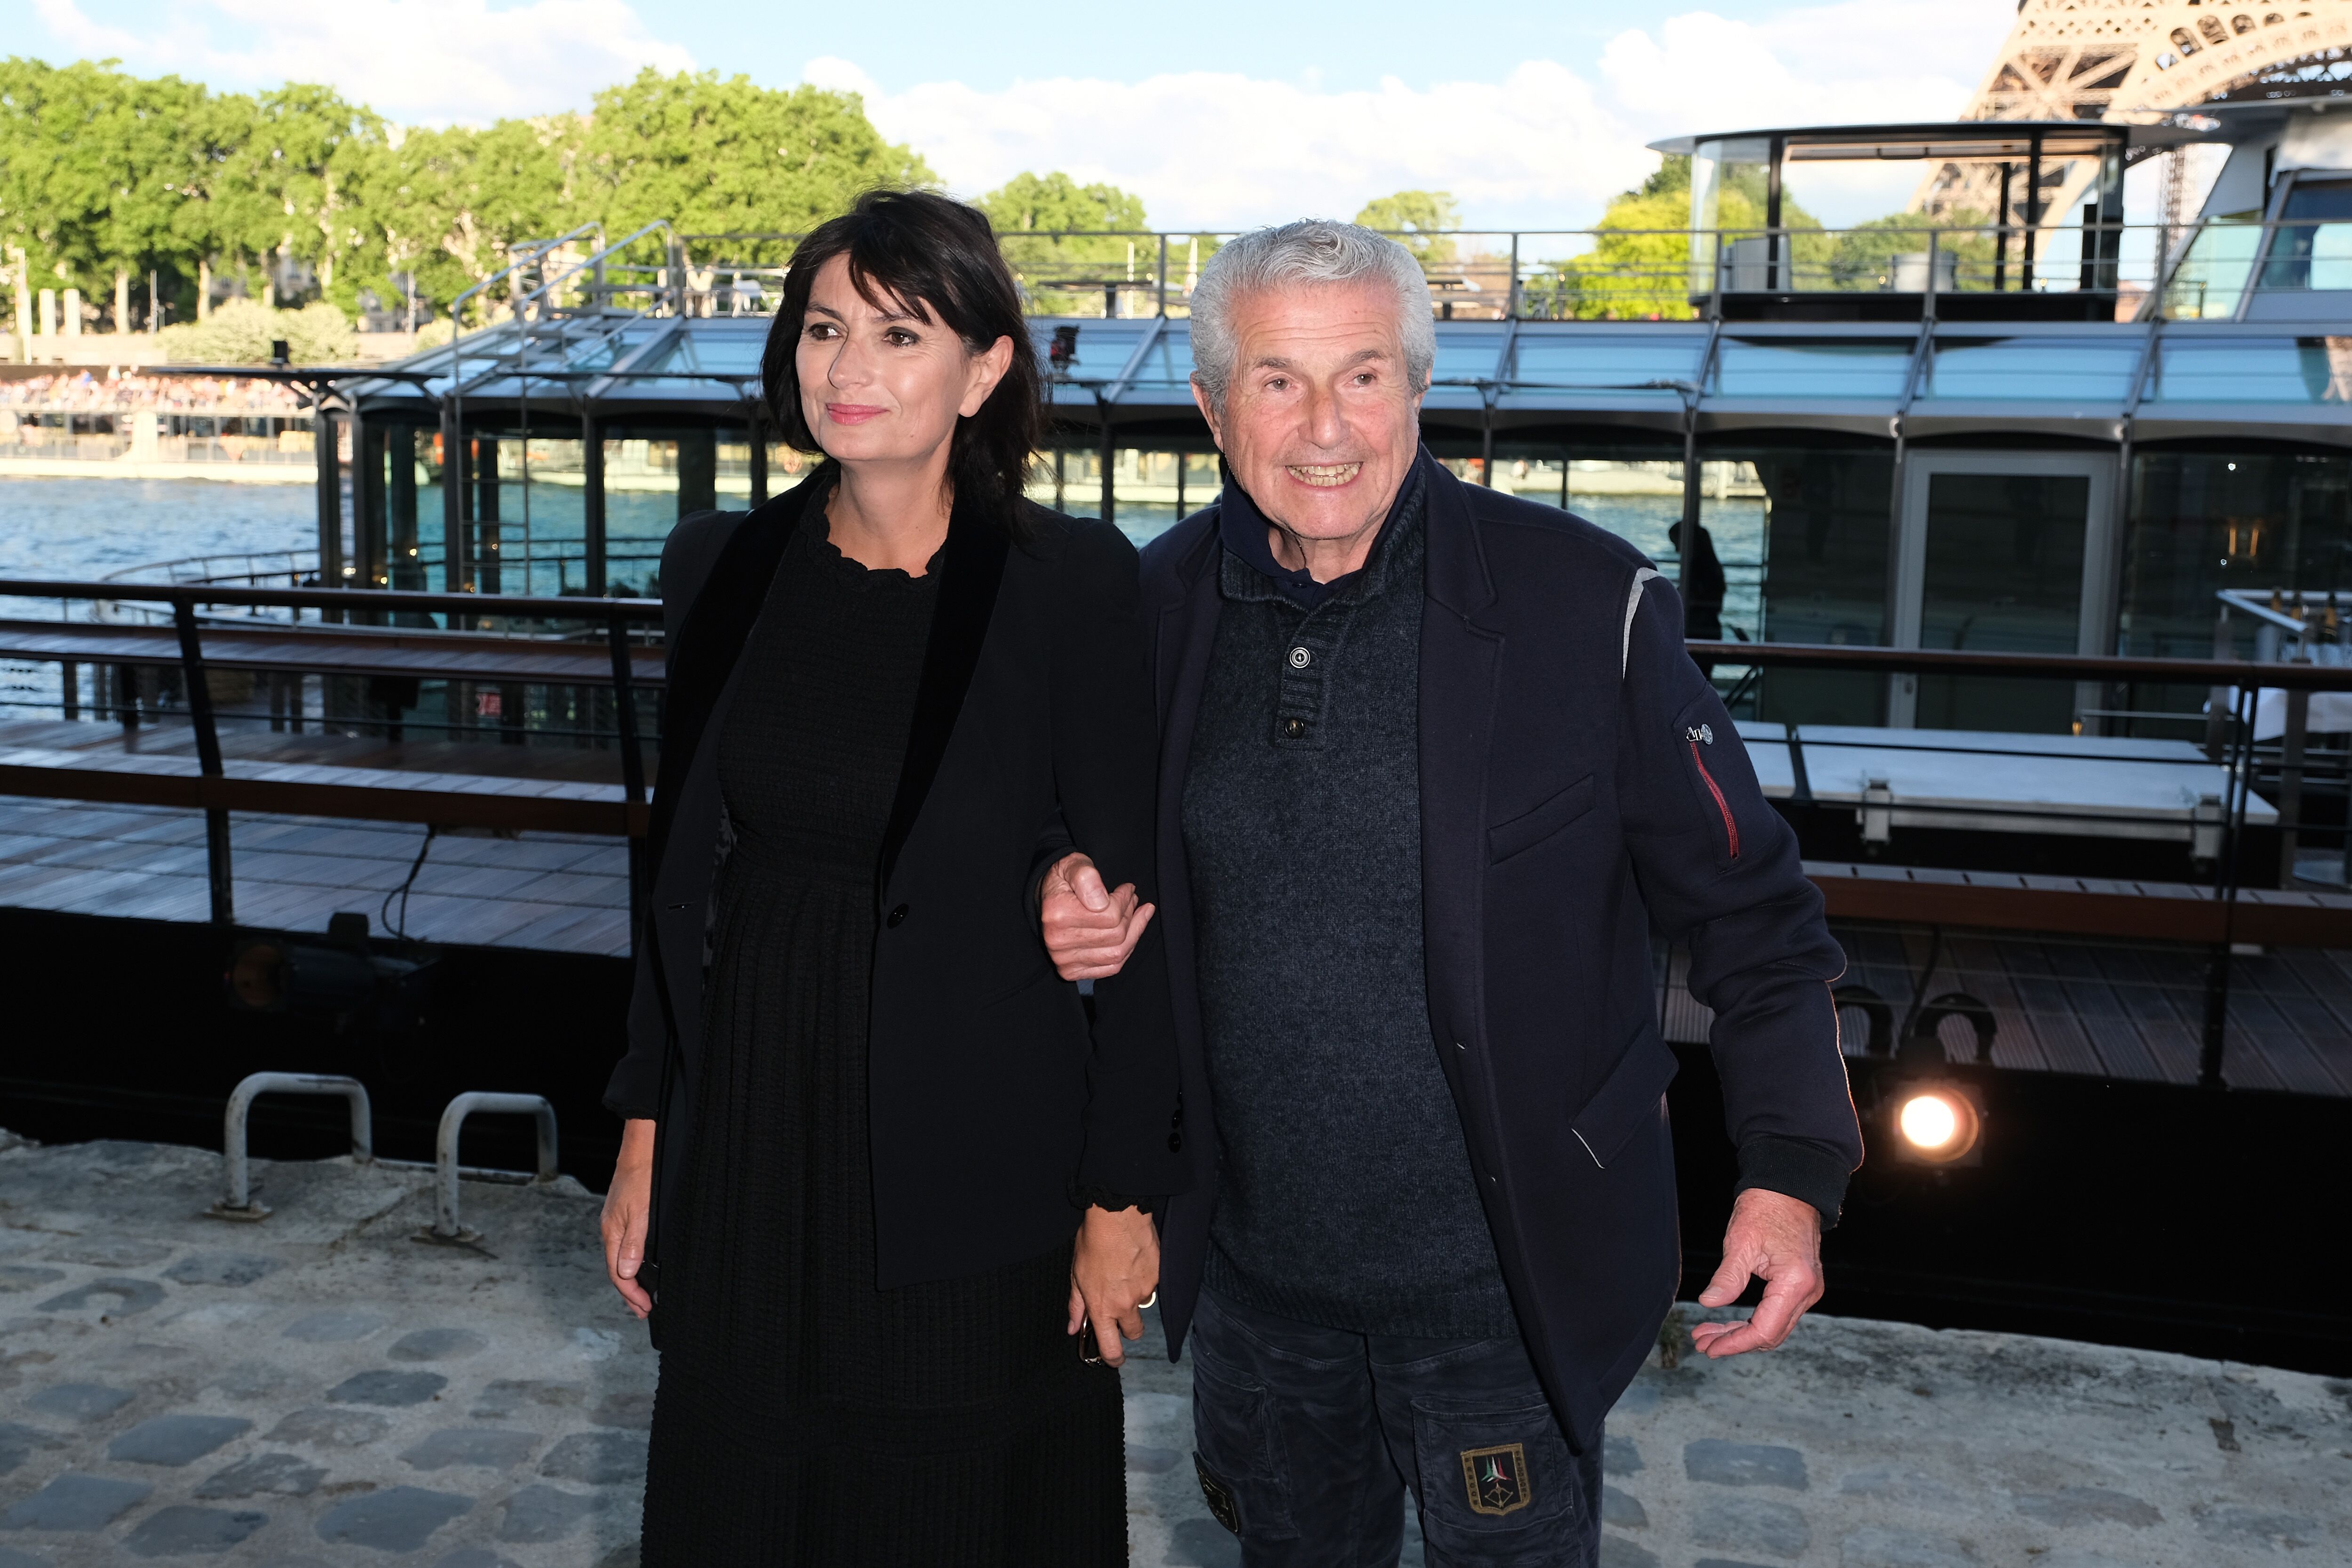 Valerie Perrin et Claude Lelouch assiste au gala de charité "Fondation Maud Fontenoy" à Ducasse sur Seine le 06 juin 2019 à Paris, France. | Photo : Getty Images